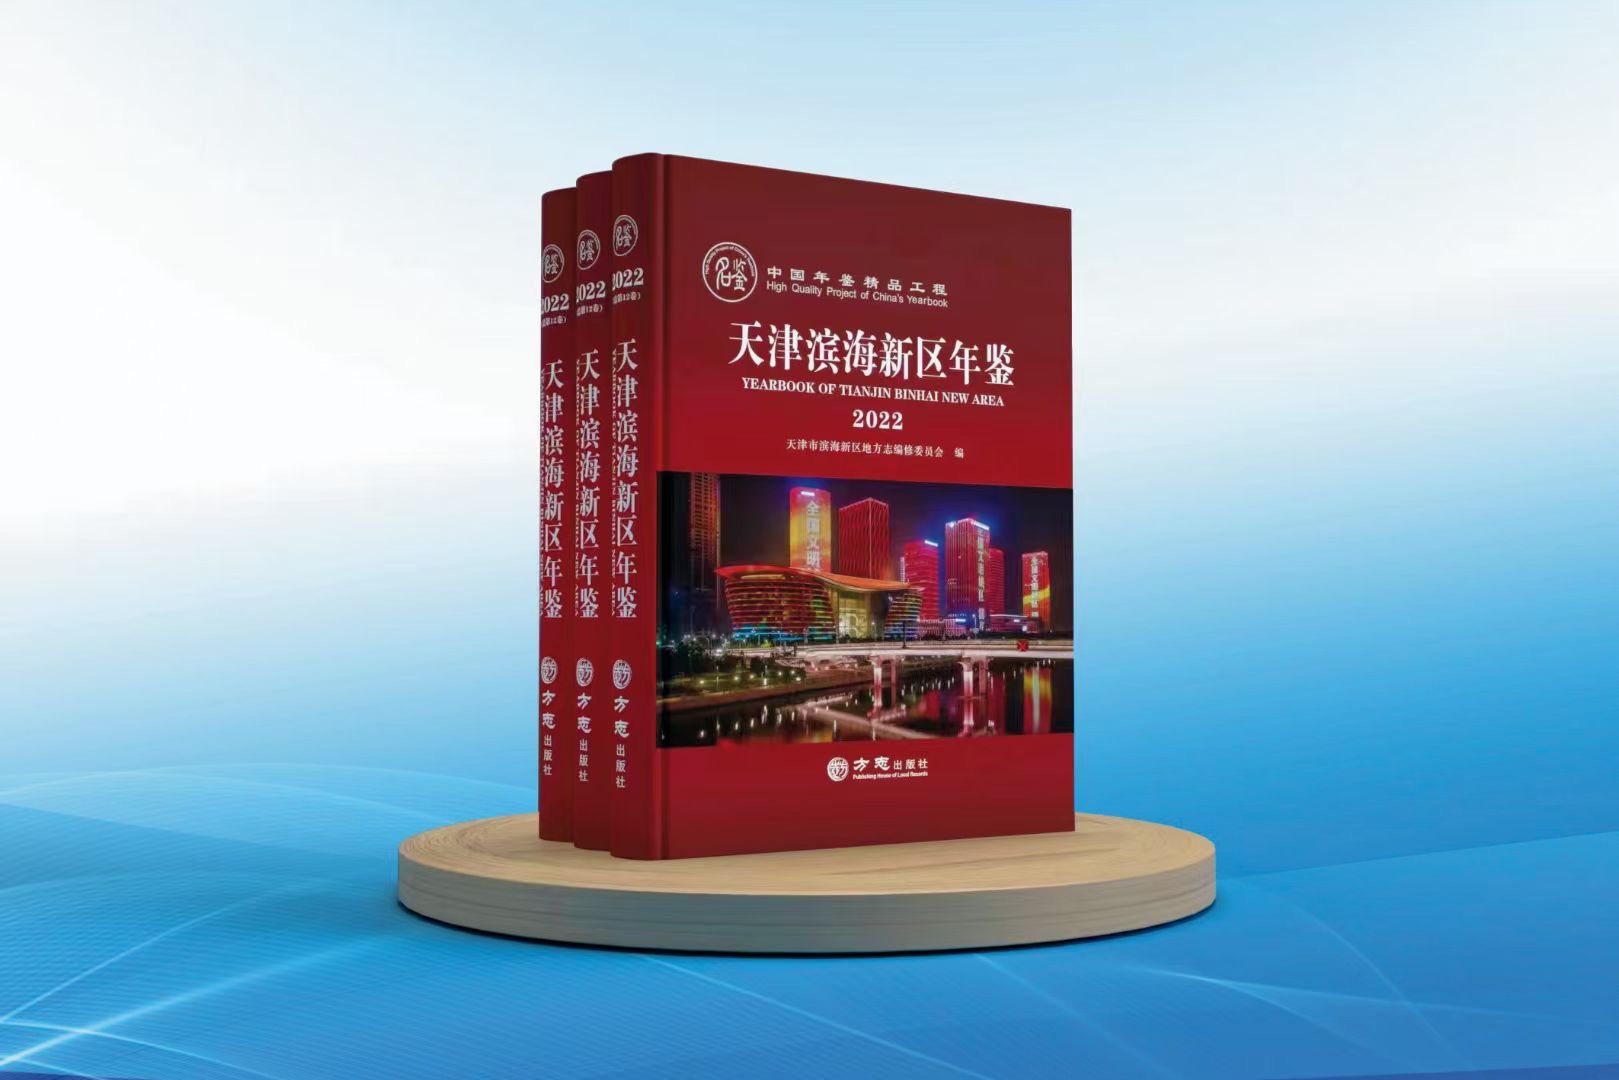 中国年鉴精品工程 《天津滨海新区年鉴（2022）》 今日公开出版发行。 这是今年继《日照年鉴（2022）》 完成公开出版发行后， 公司出版的 第二部全国精品年鉴。 2022年“中国年鉴精品工程” 全国共评选出18部。